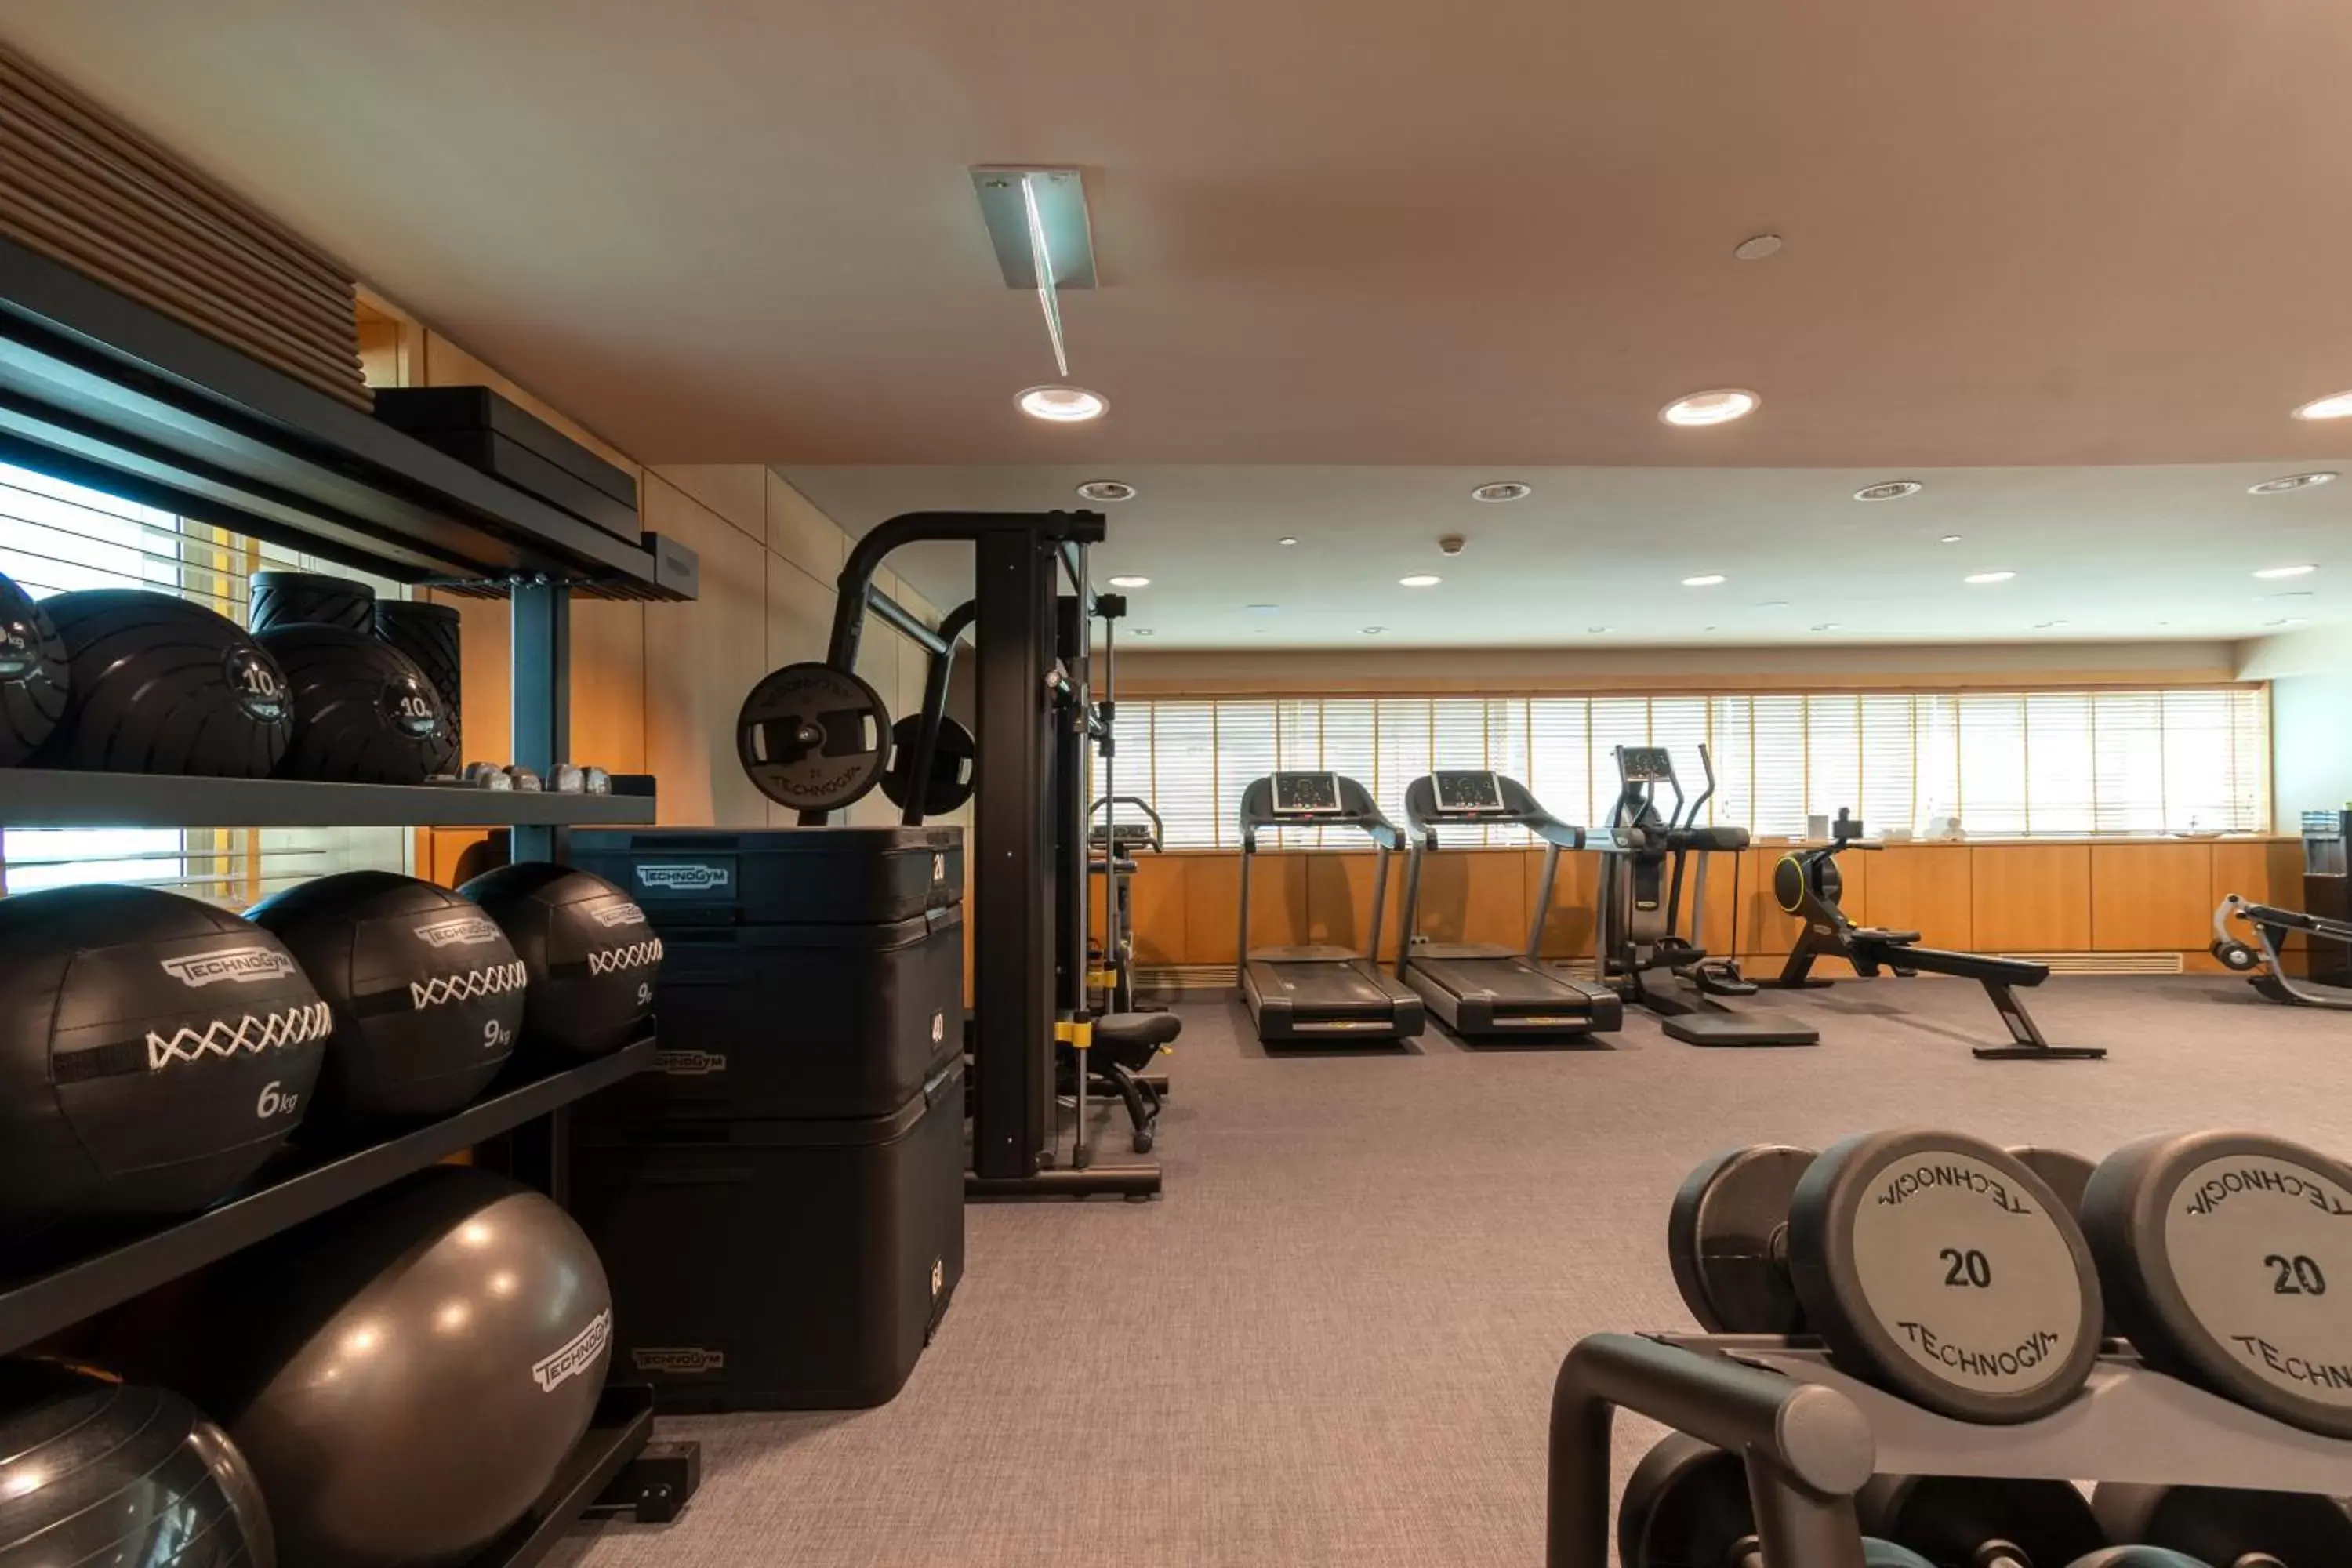 Fitness centre/facilities, Fitness Center/Facilities in SANA Malhoa Hotel